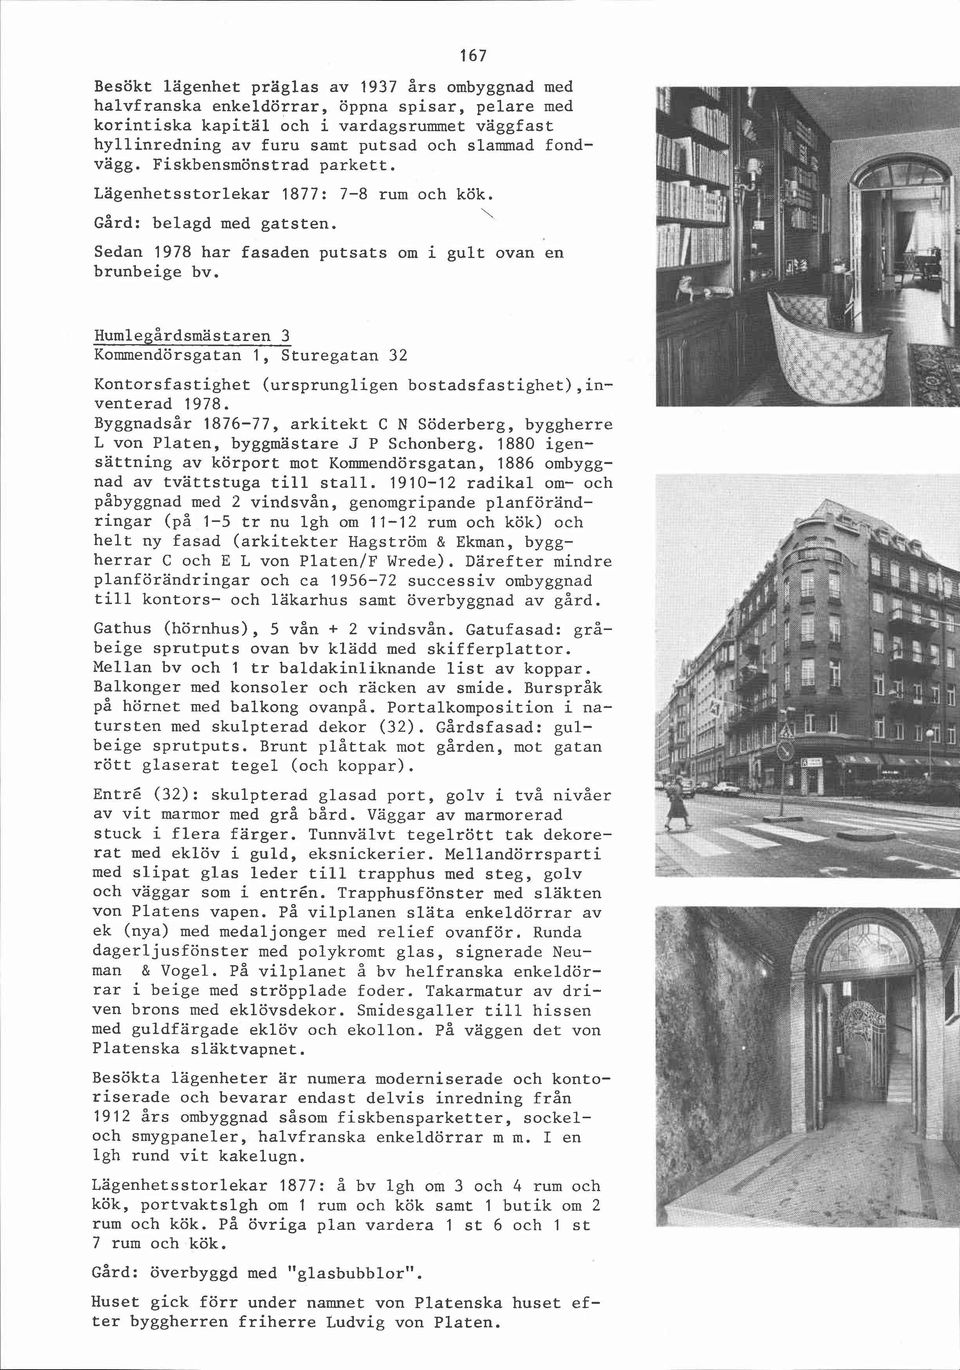 Humlegårdsmästaren 3 Kommendörsgatan 1, Sturegatan 32 Kontorsfastighet (ursprungligen bostadsfastighet),inventerad 1978.